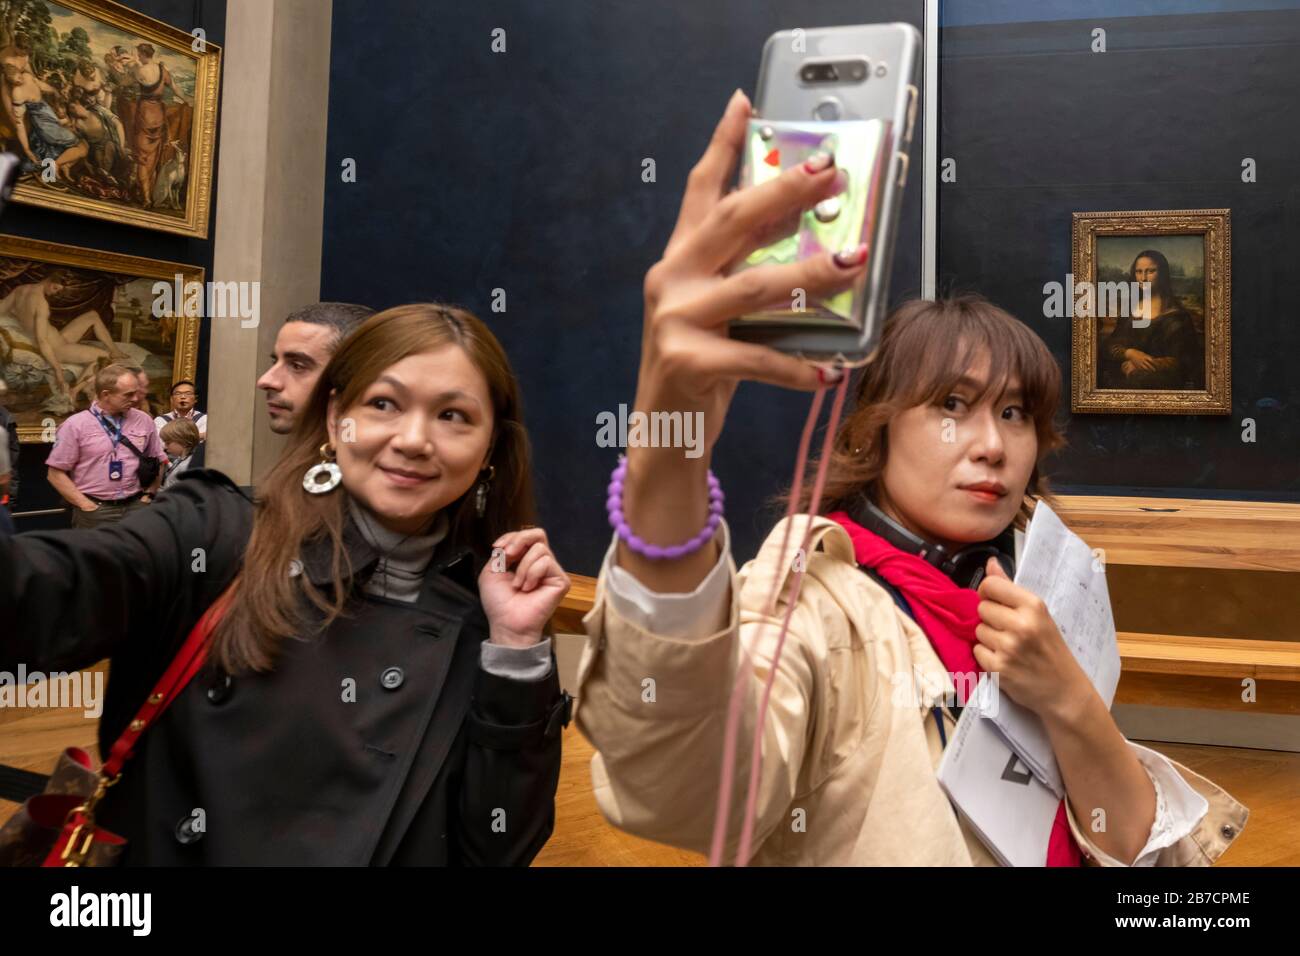 Asiatische Touristen benutzen ihre Smartphones, um mit dem Mona-Lisa-Gemälde des Künstlers Leonardo da Vinci, Louvre Museum, Paris, Frankreich, Europa Selfies zu machen Stockfoto